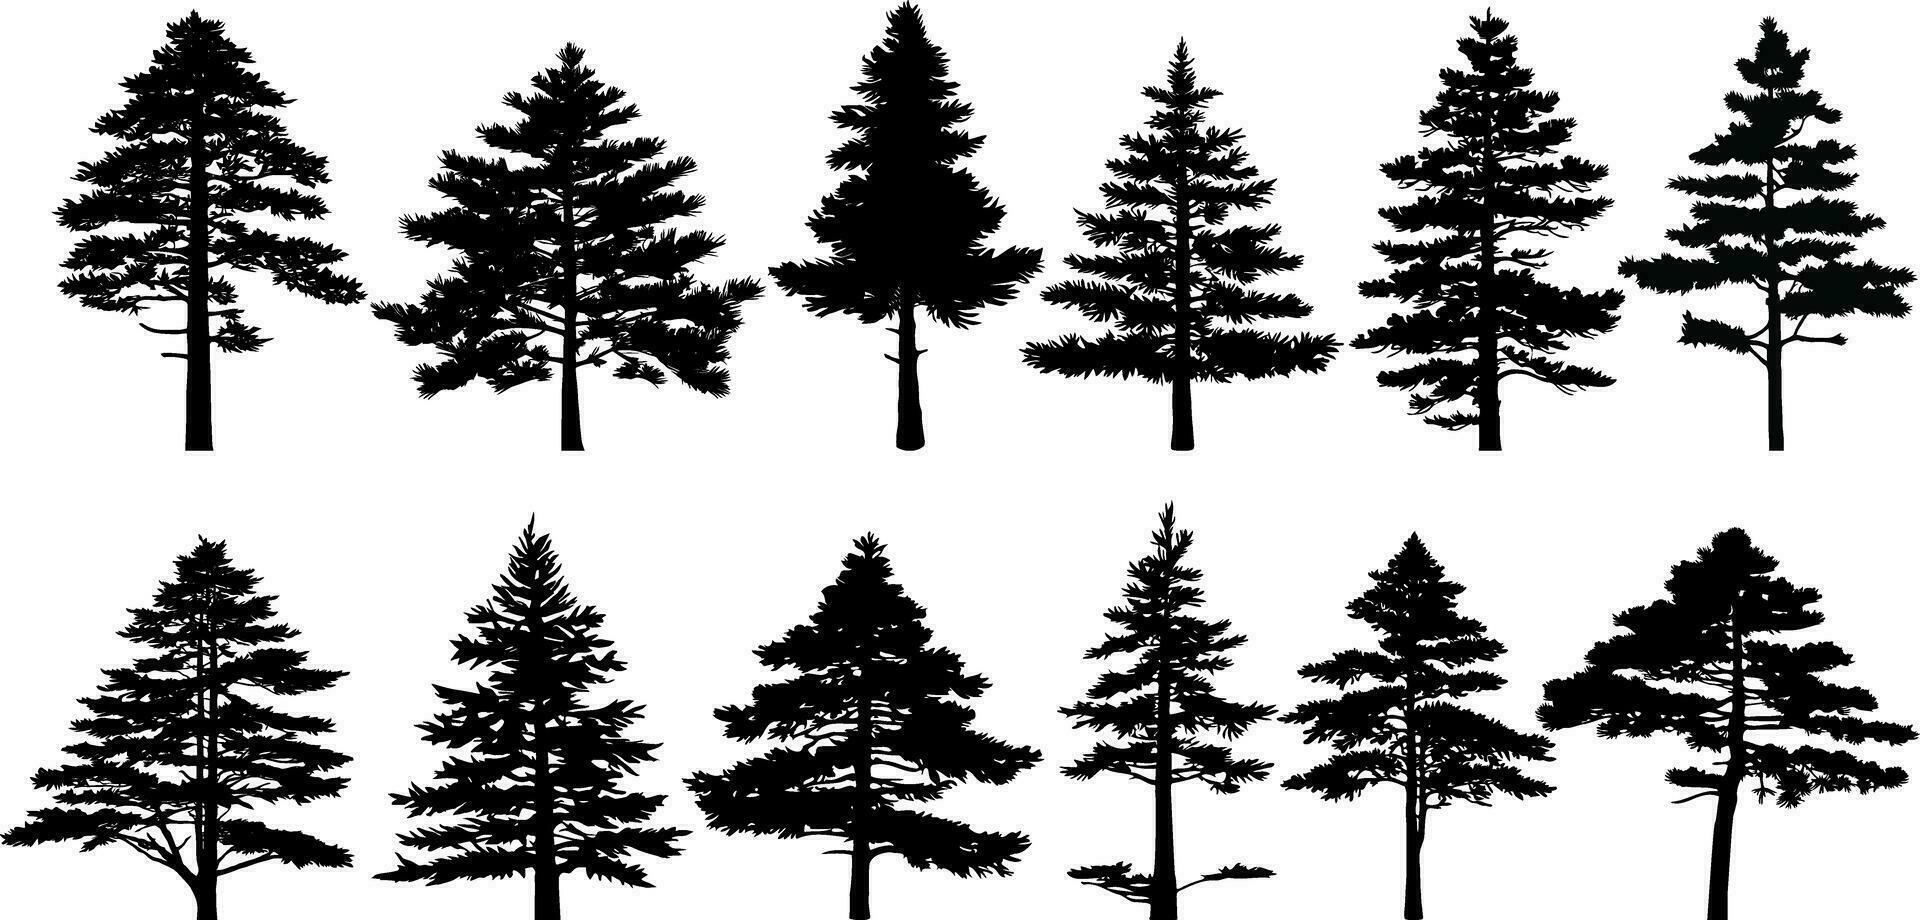 samling av silhuetter av tall träd. vektor illustration.